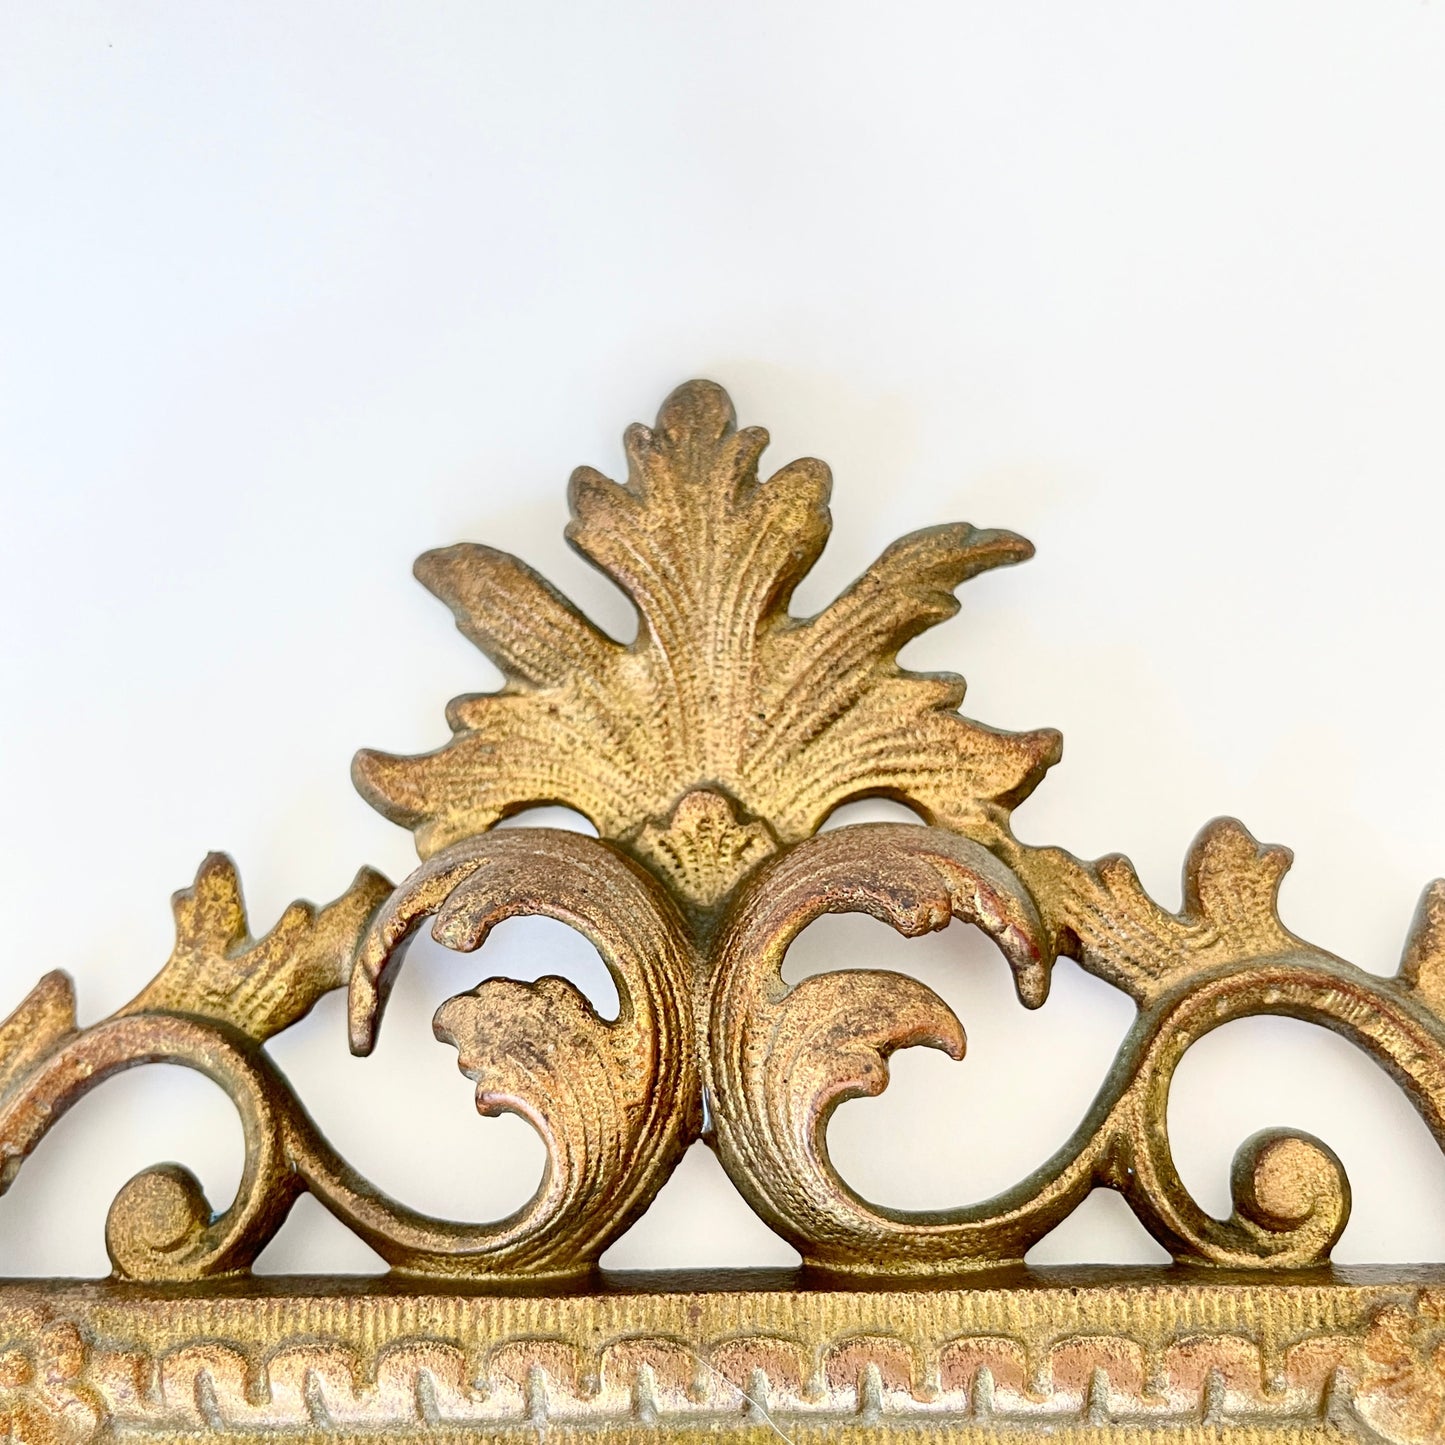 Vintage Brass Ornate Vanity Mirror for Dresser or Tabletop